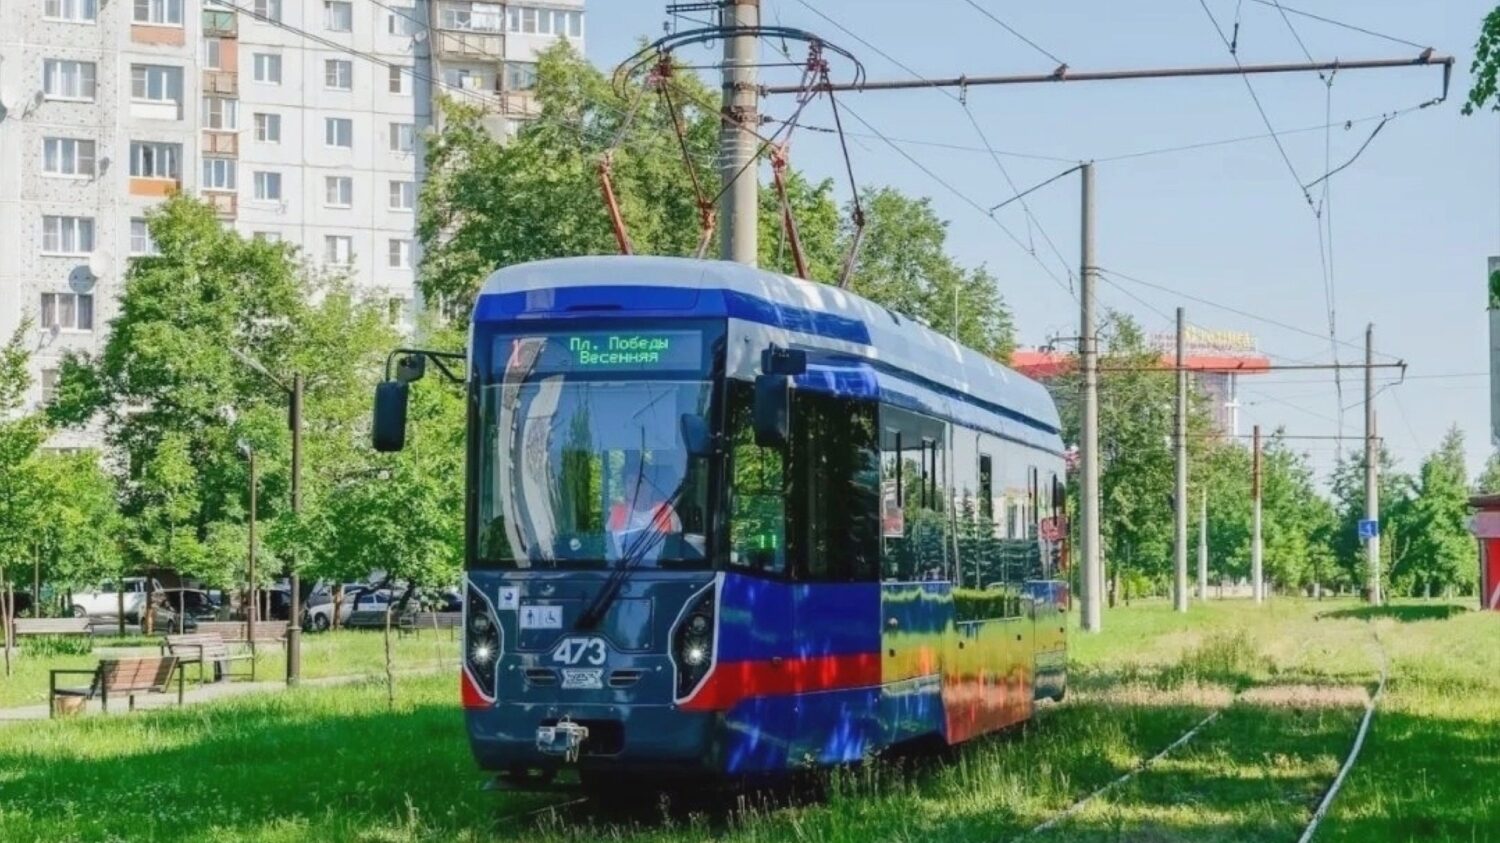 Tramvaj ve Vladikavkazu. (foto: Uraltransmaš)